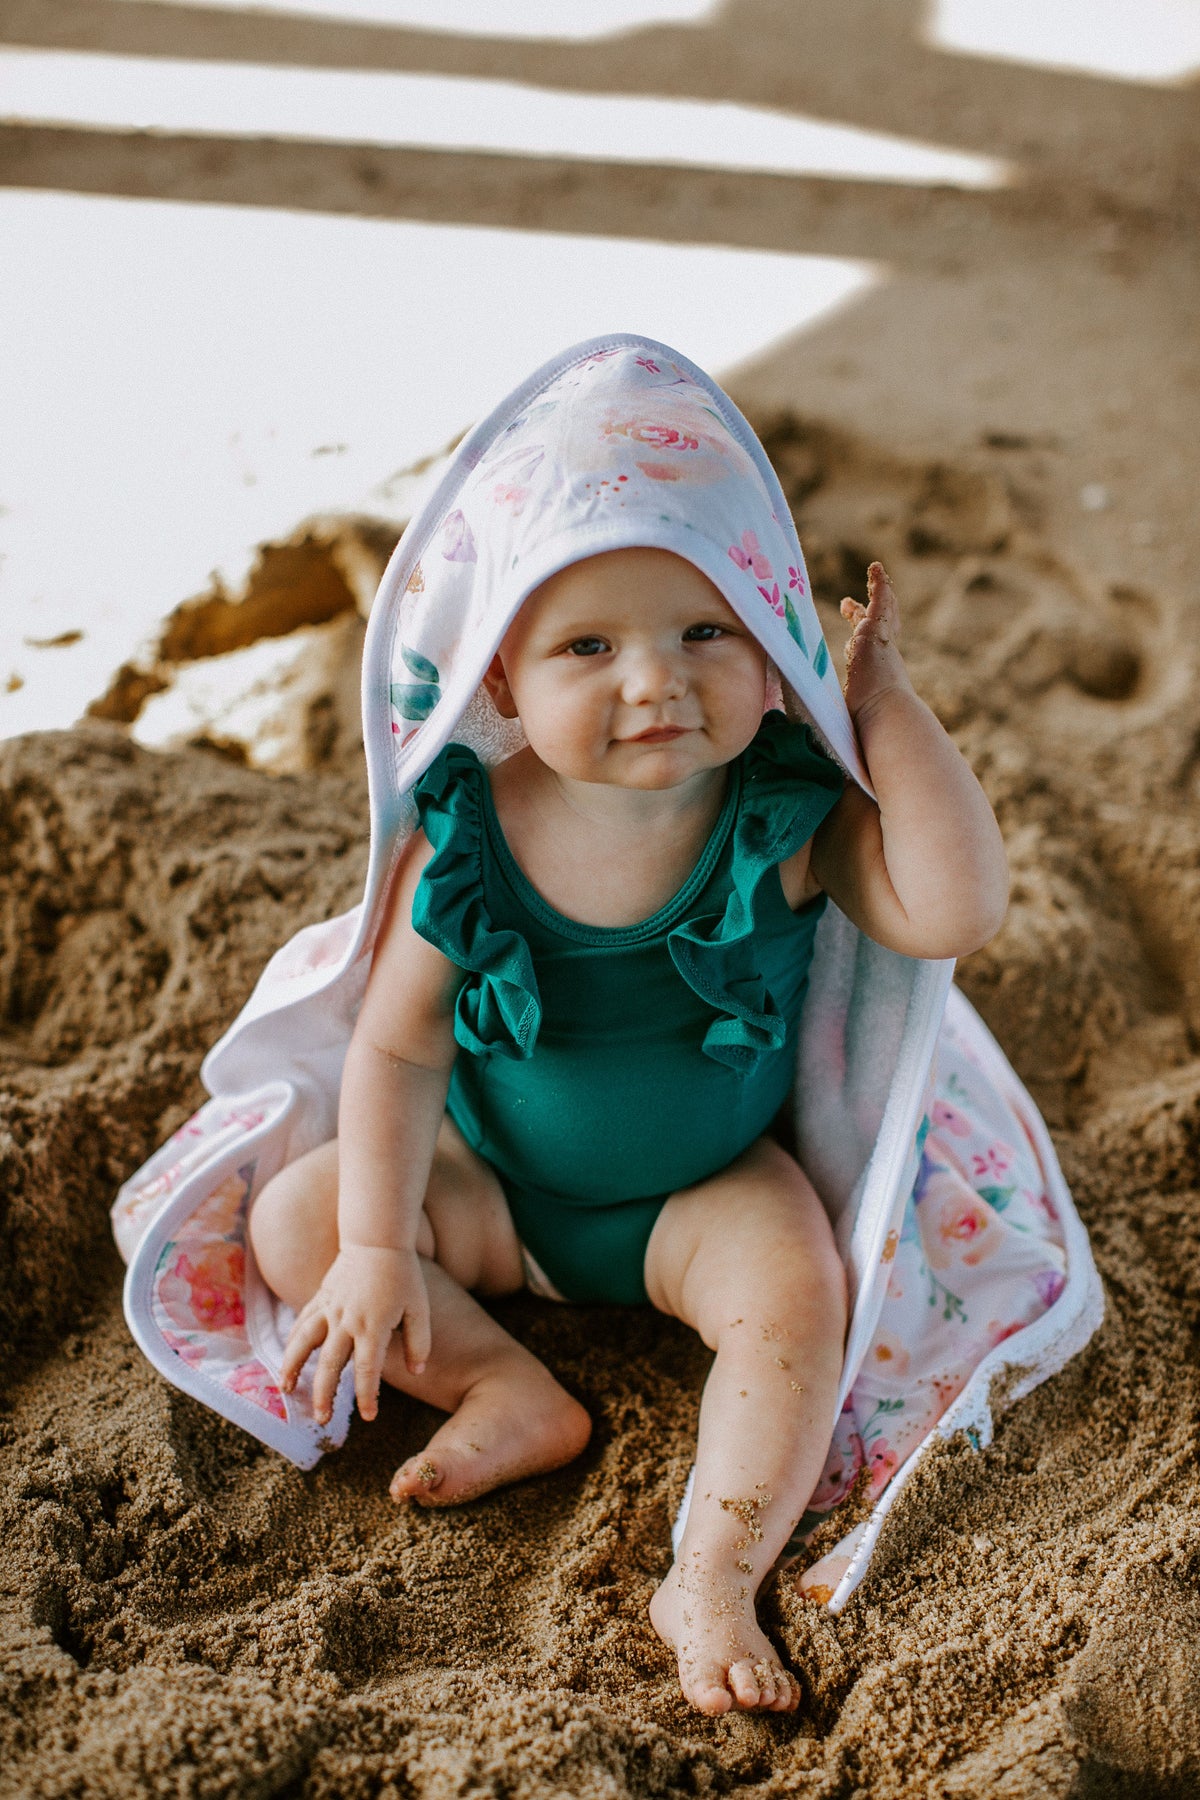 Premium Baby  Knit Hooded Towel - Bloom